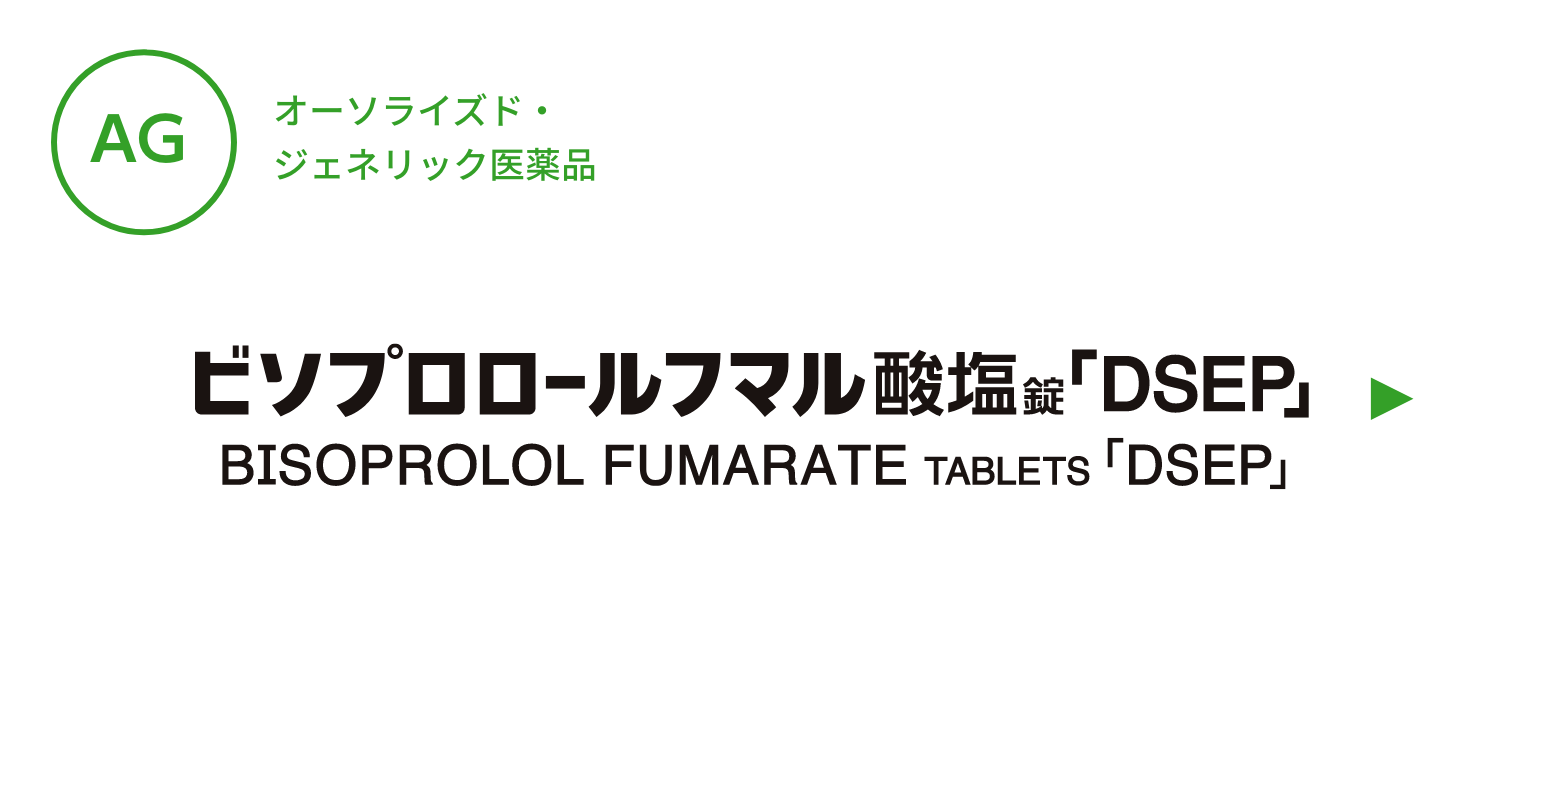 【AG】ビソプロロールフマル酸塩錠「DSEP」